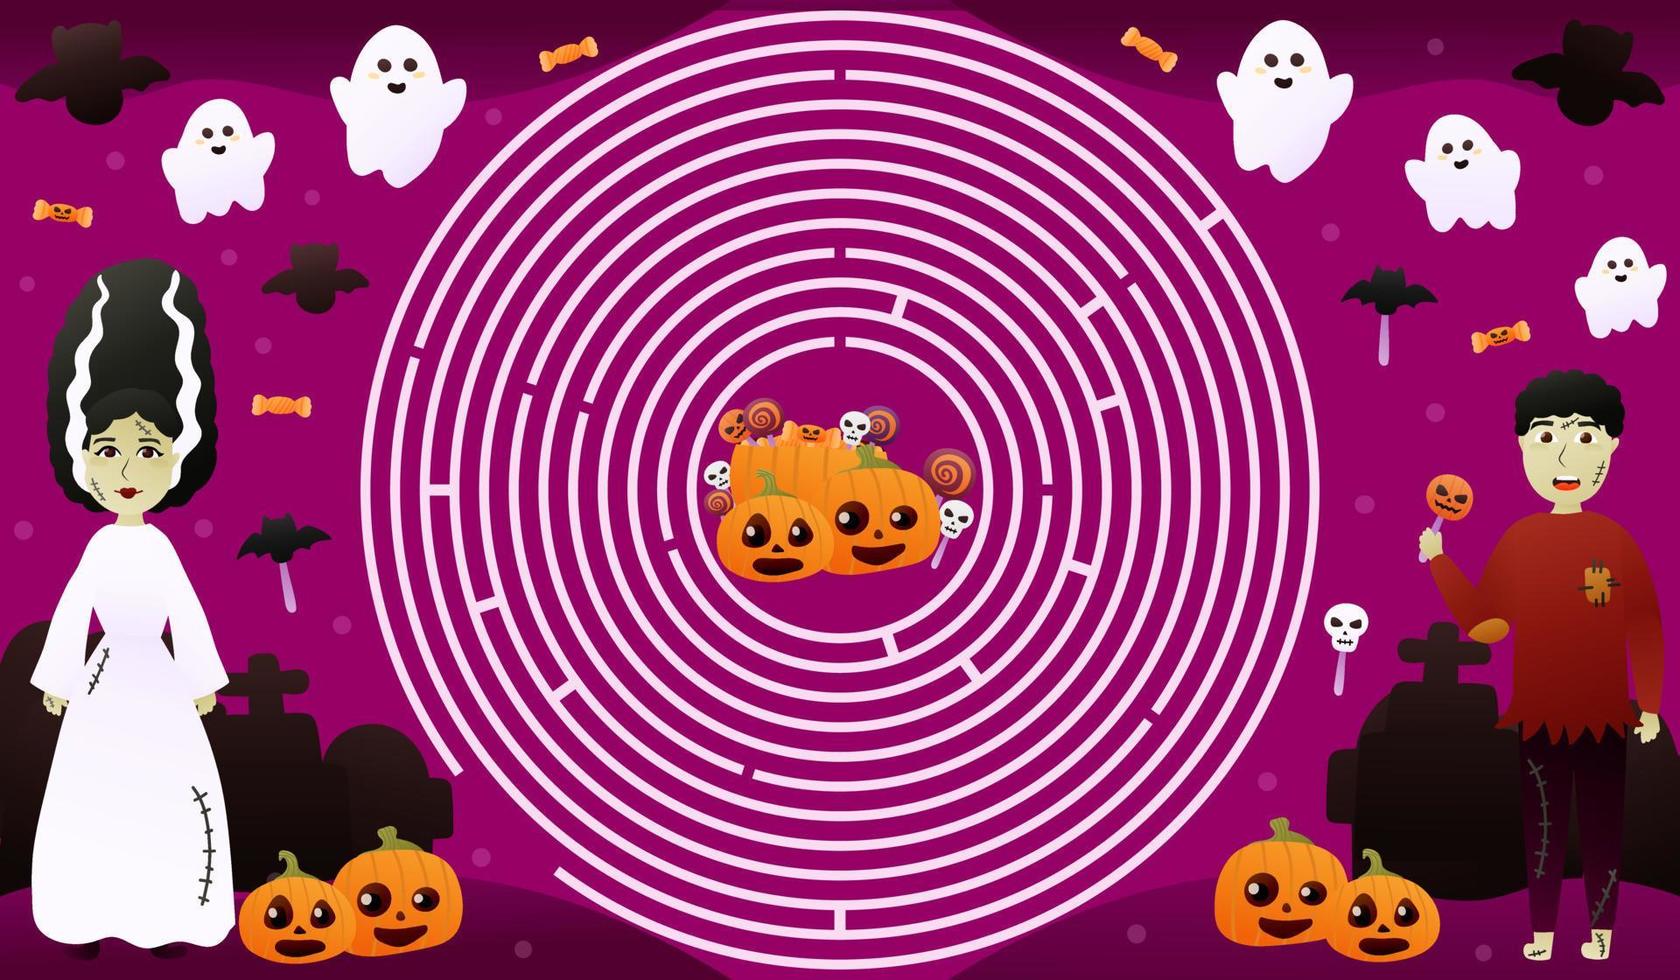 Kreislabyrinth für Kinder mit farbenfrohem Halloween-Charakter, Weg zu Süßigkeiten finden, niedliche Kürbisgesichter und fliegende Geister auf lila Hintergrund, druckbares Arbeitsblatt für Halloween oder Kinderbücher vektor